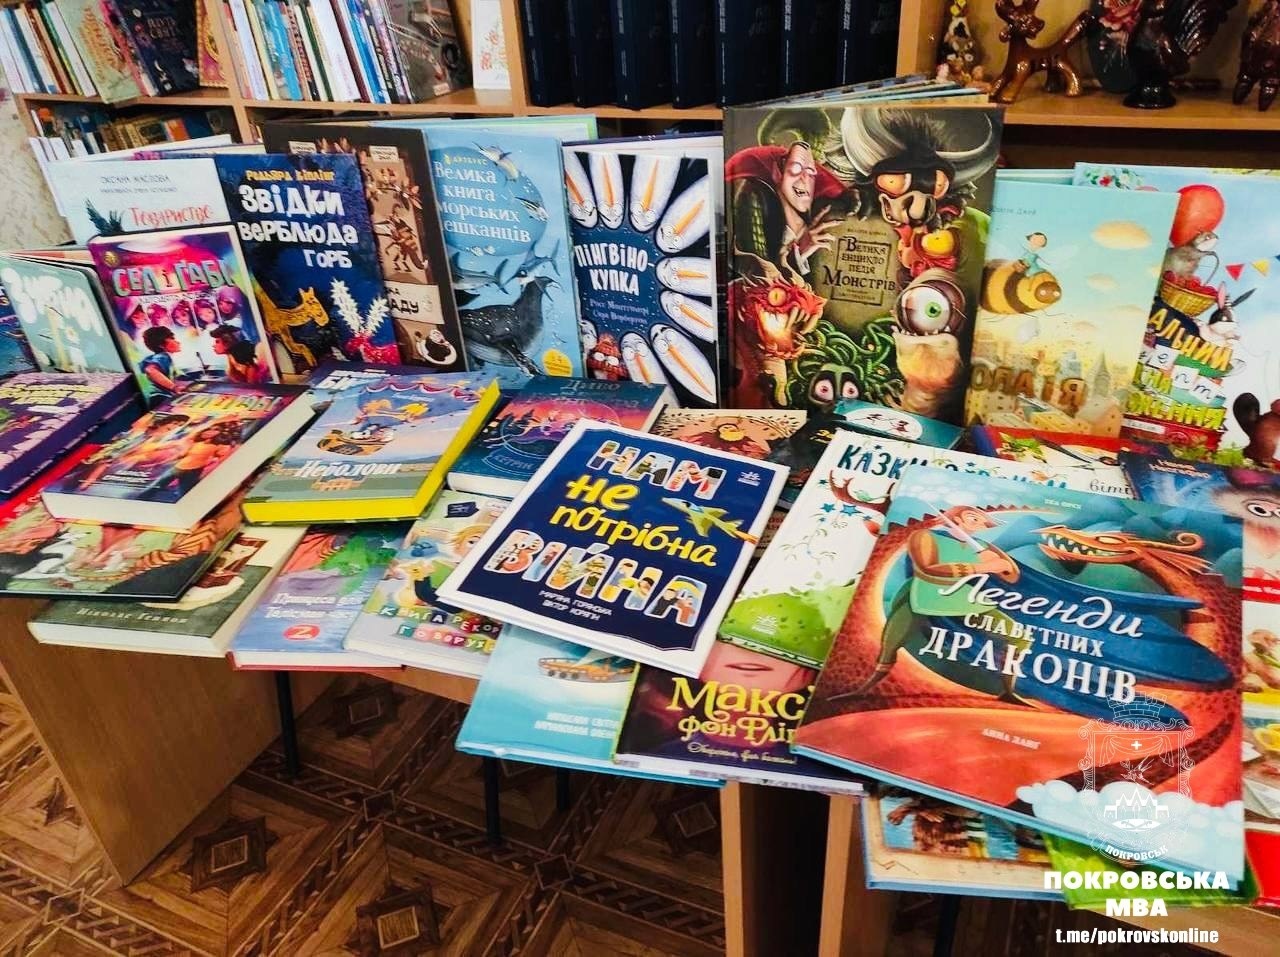 Центральная покровская детская библиотека получила 107 новых книг на 30 тысяч гривен (ФОТО) 1